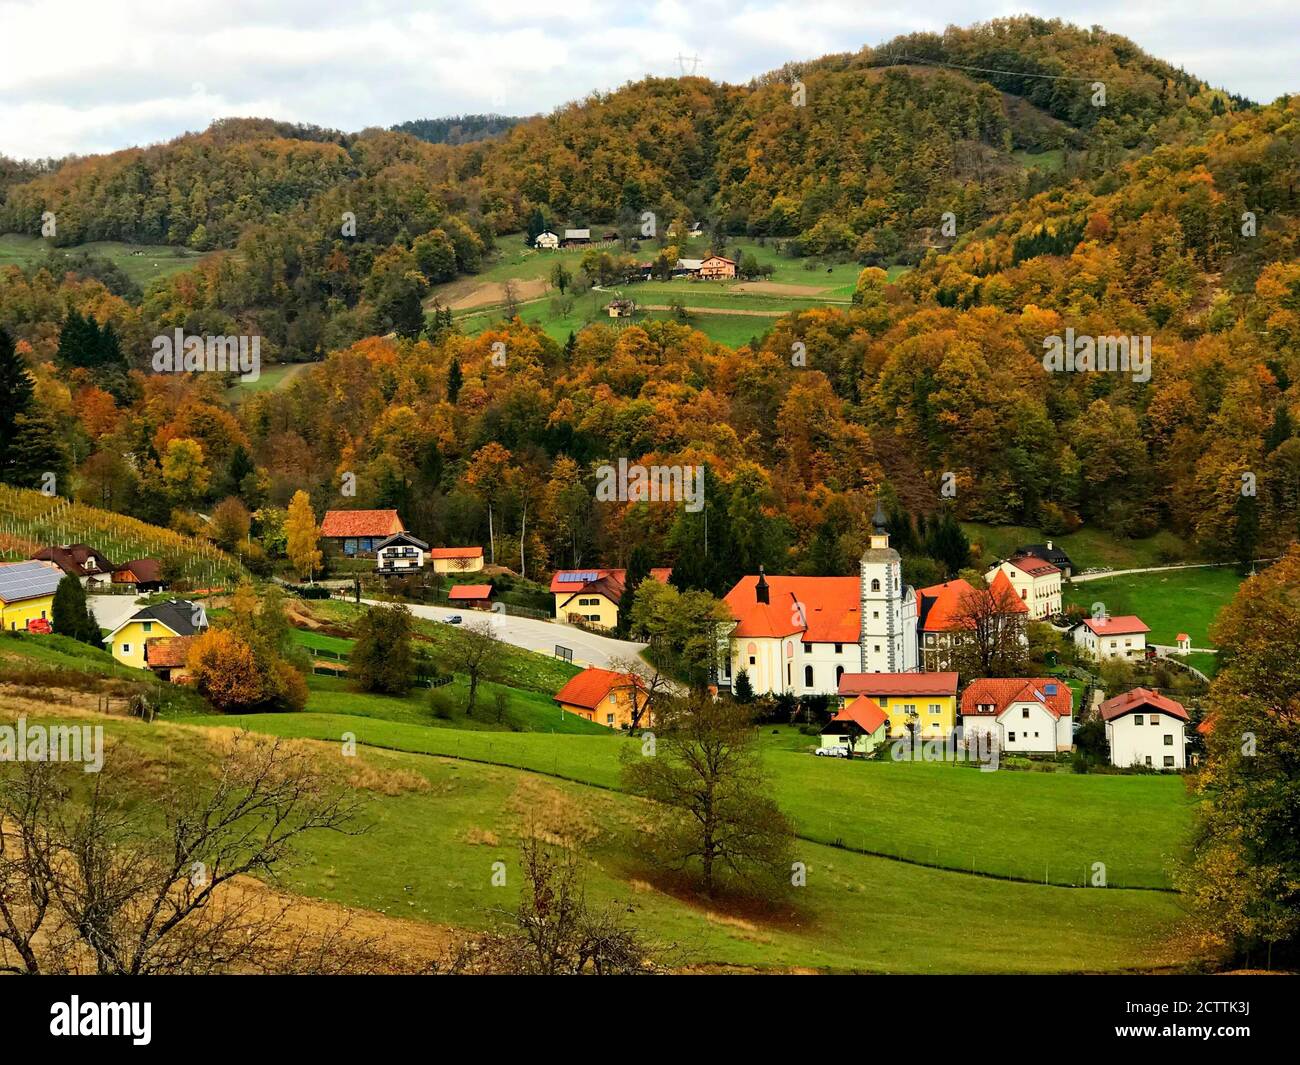 Schöne idyllische ländliche Landschaft, Slowenien. Malerisches idyllisches Dorf Olimje. Malerische slowenische Landschaft. Grüne Hügel. Herbstwald. Gelassenheit Stockfoto